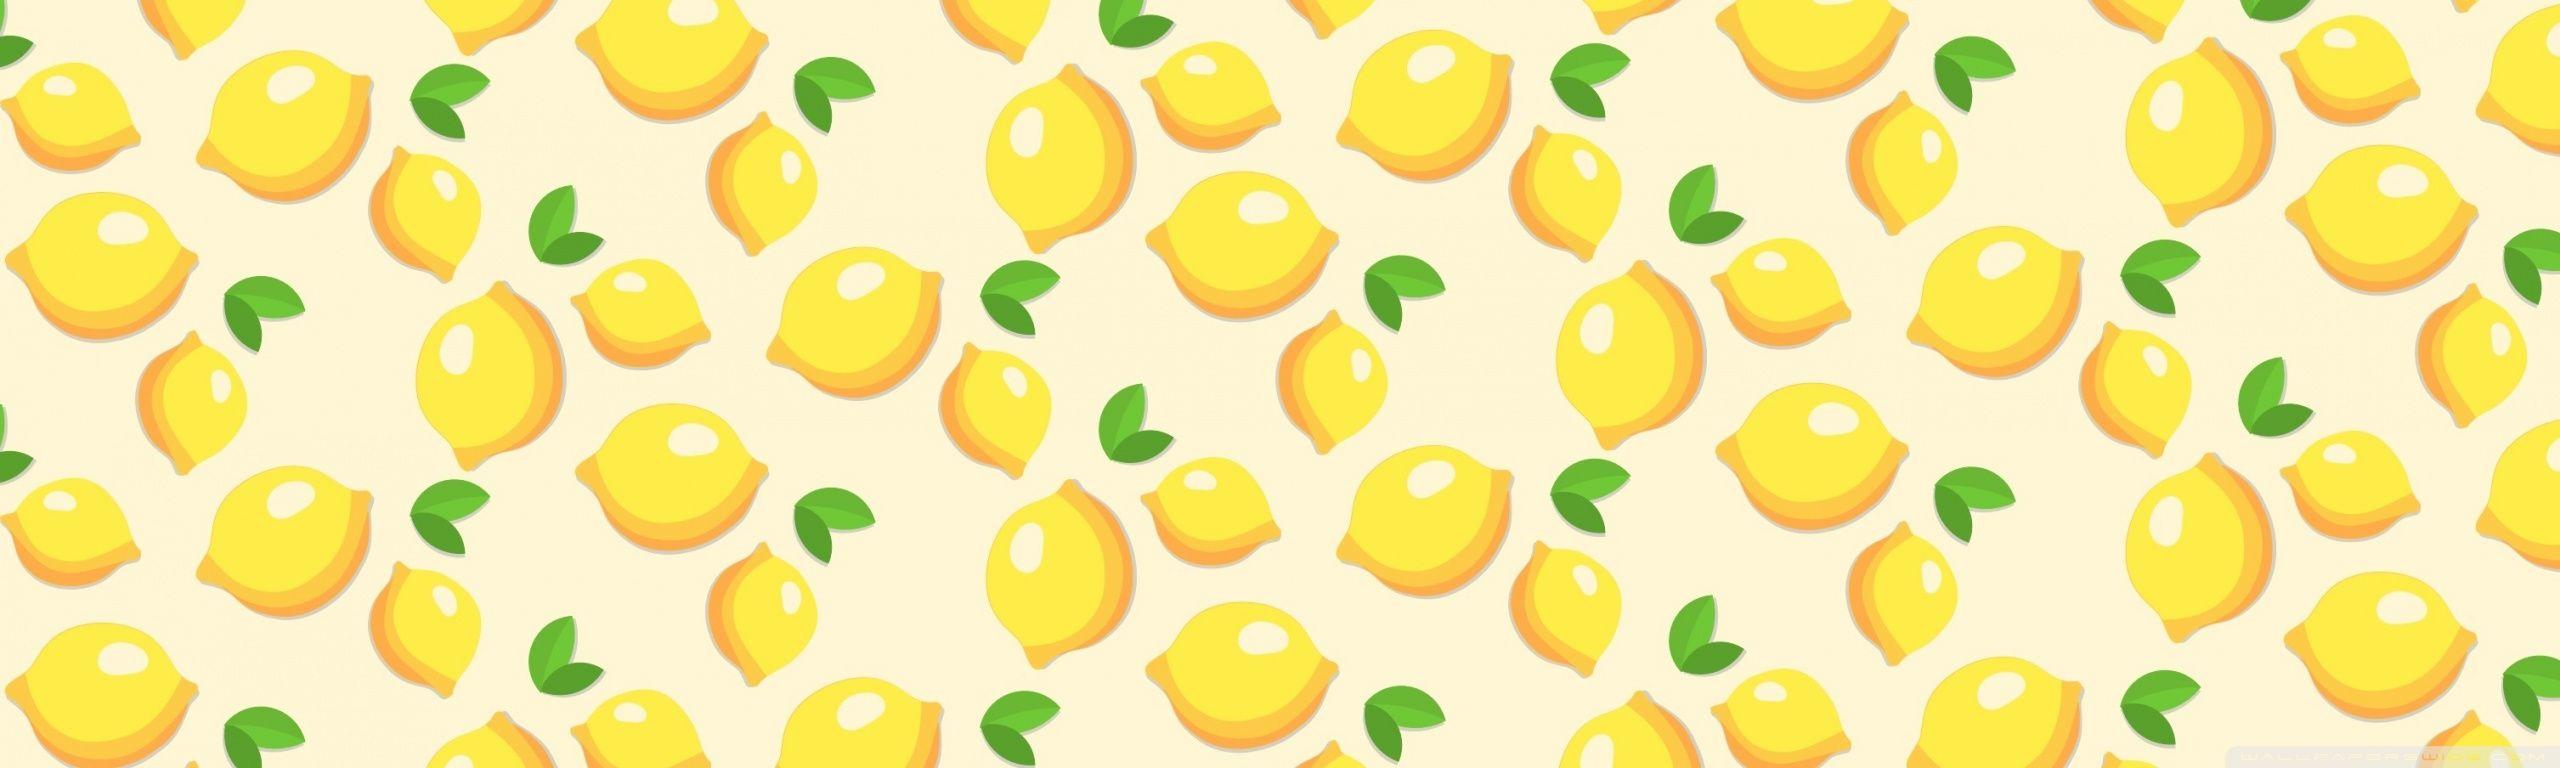 Lemons Pattern HD desktop wallpaper, Widescreen, High Definition